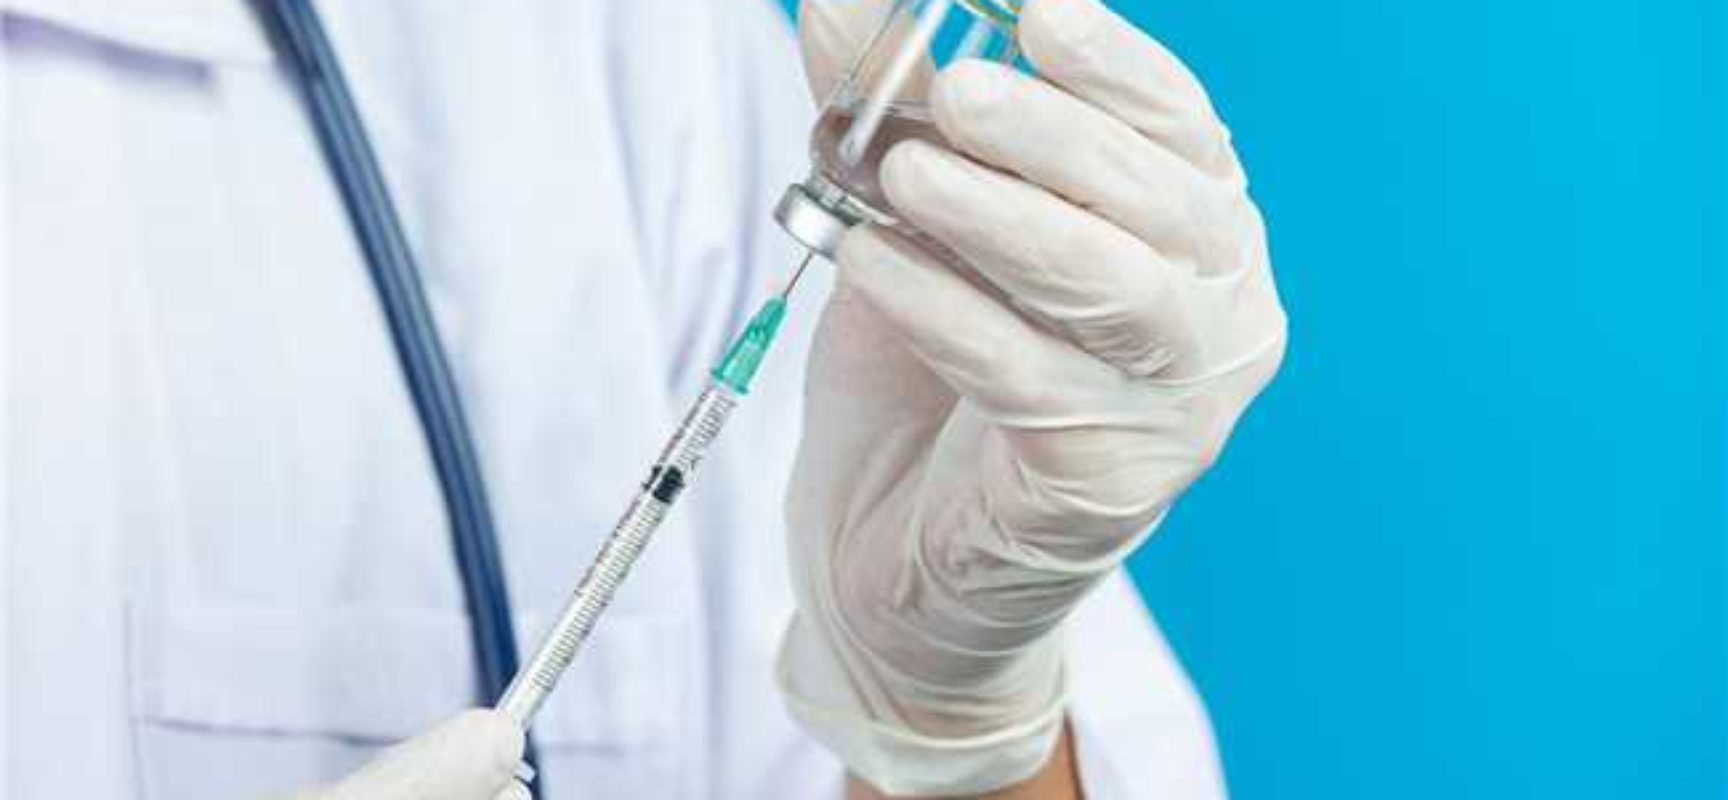 Conselho Municipal de Saúde aprova plano de vacinação contra a Covid-19 em Ilhéus